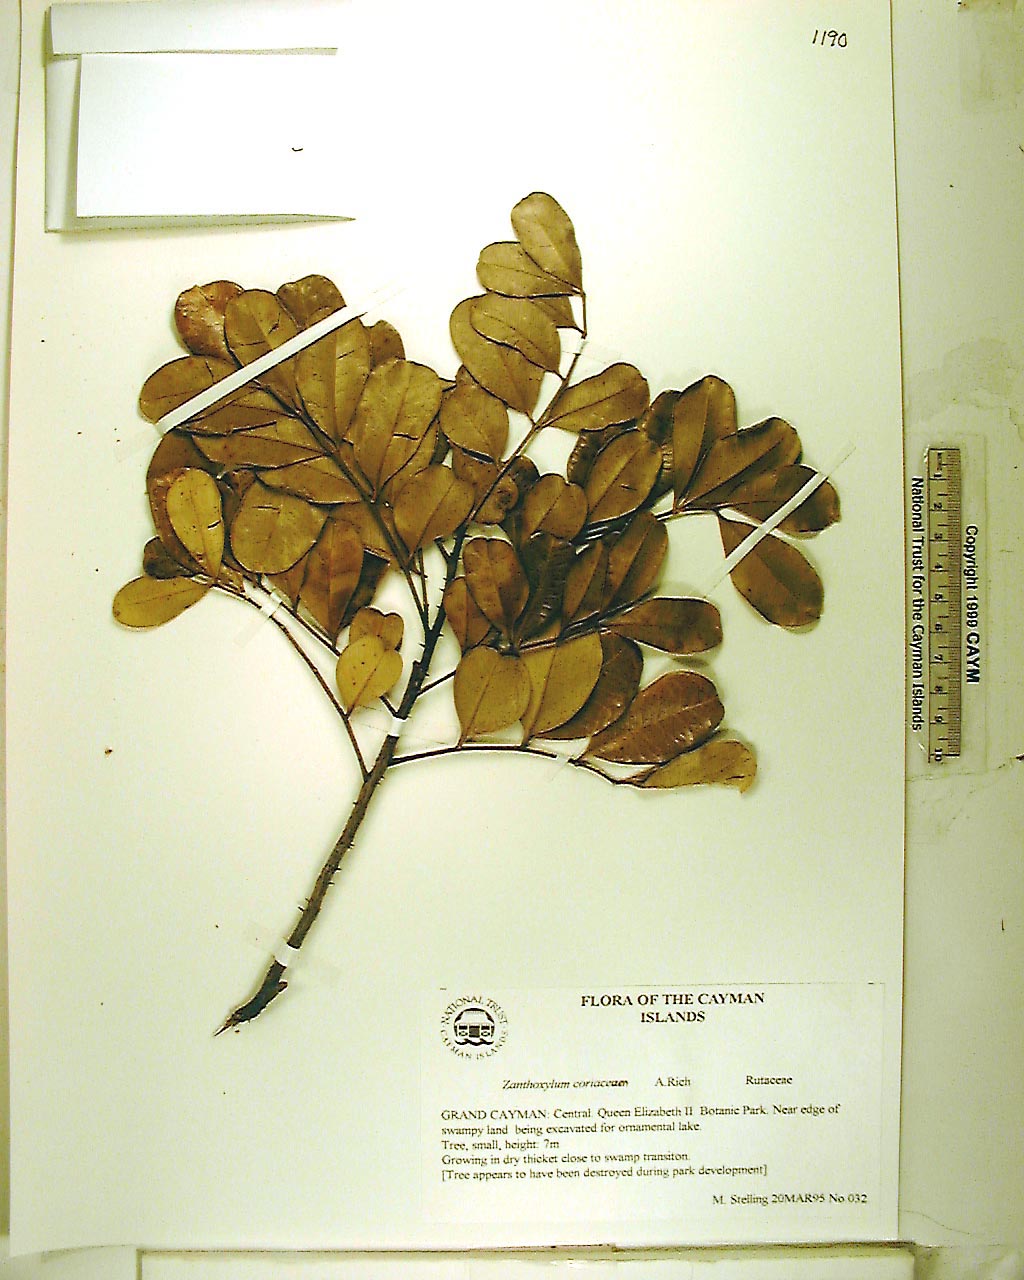 National Trust Virtual herbarium